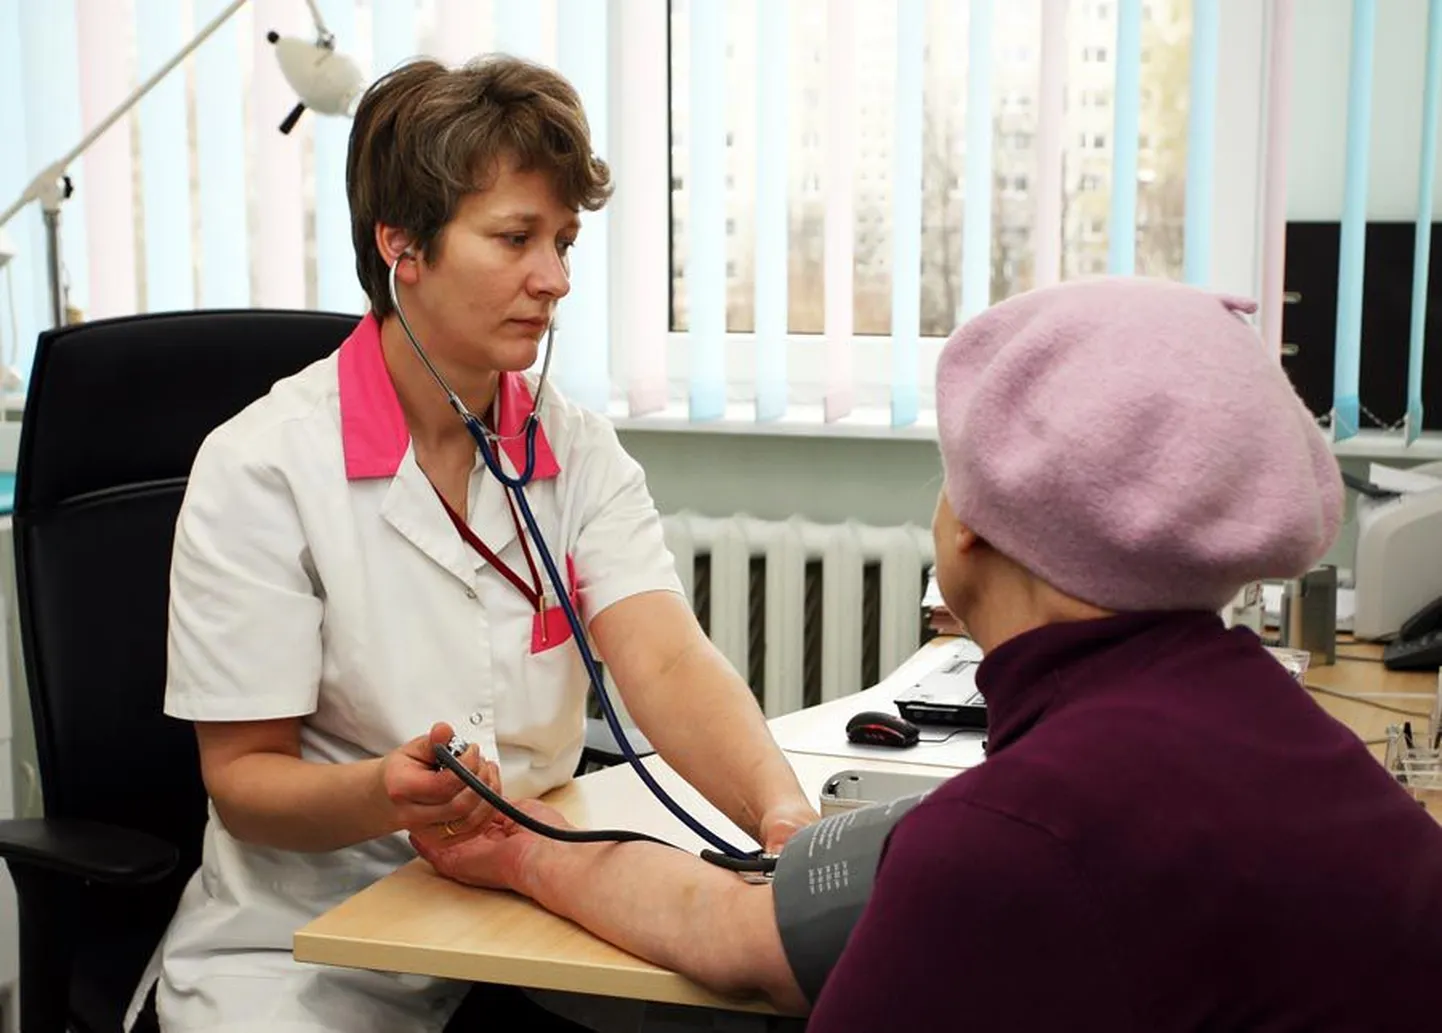 Personaalne meditsiin võimaldab haigusi ennetada. Pildil mõõdab eaka patsiendi vererõhku Järveotsa perearstikeskuse arst Diana Ingerainen.